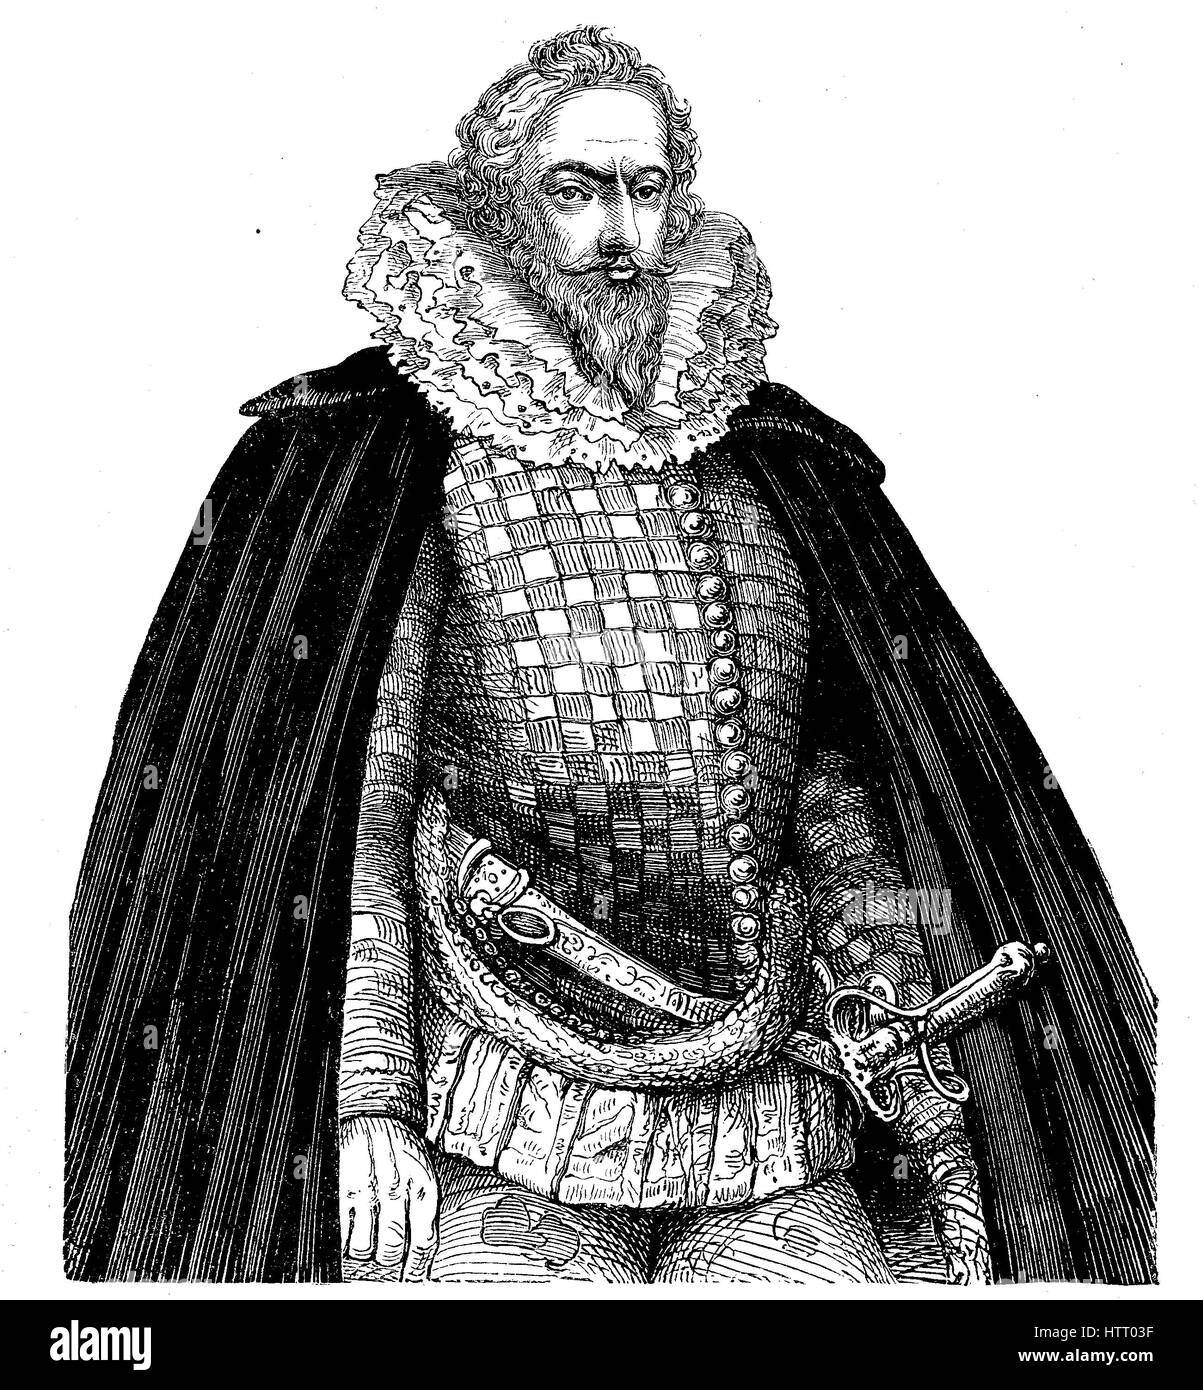 Robert Devereux, 2 comte d'Essex, 10 novembre 1565 - 25 février 1601, un noble anglais et un favori d'Elizabeth I, la reproduction d'une gravure sur bois à partir de l'année 1880, l'amélioration numérique Banque D'Images